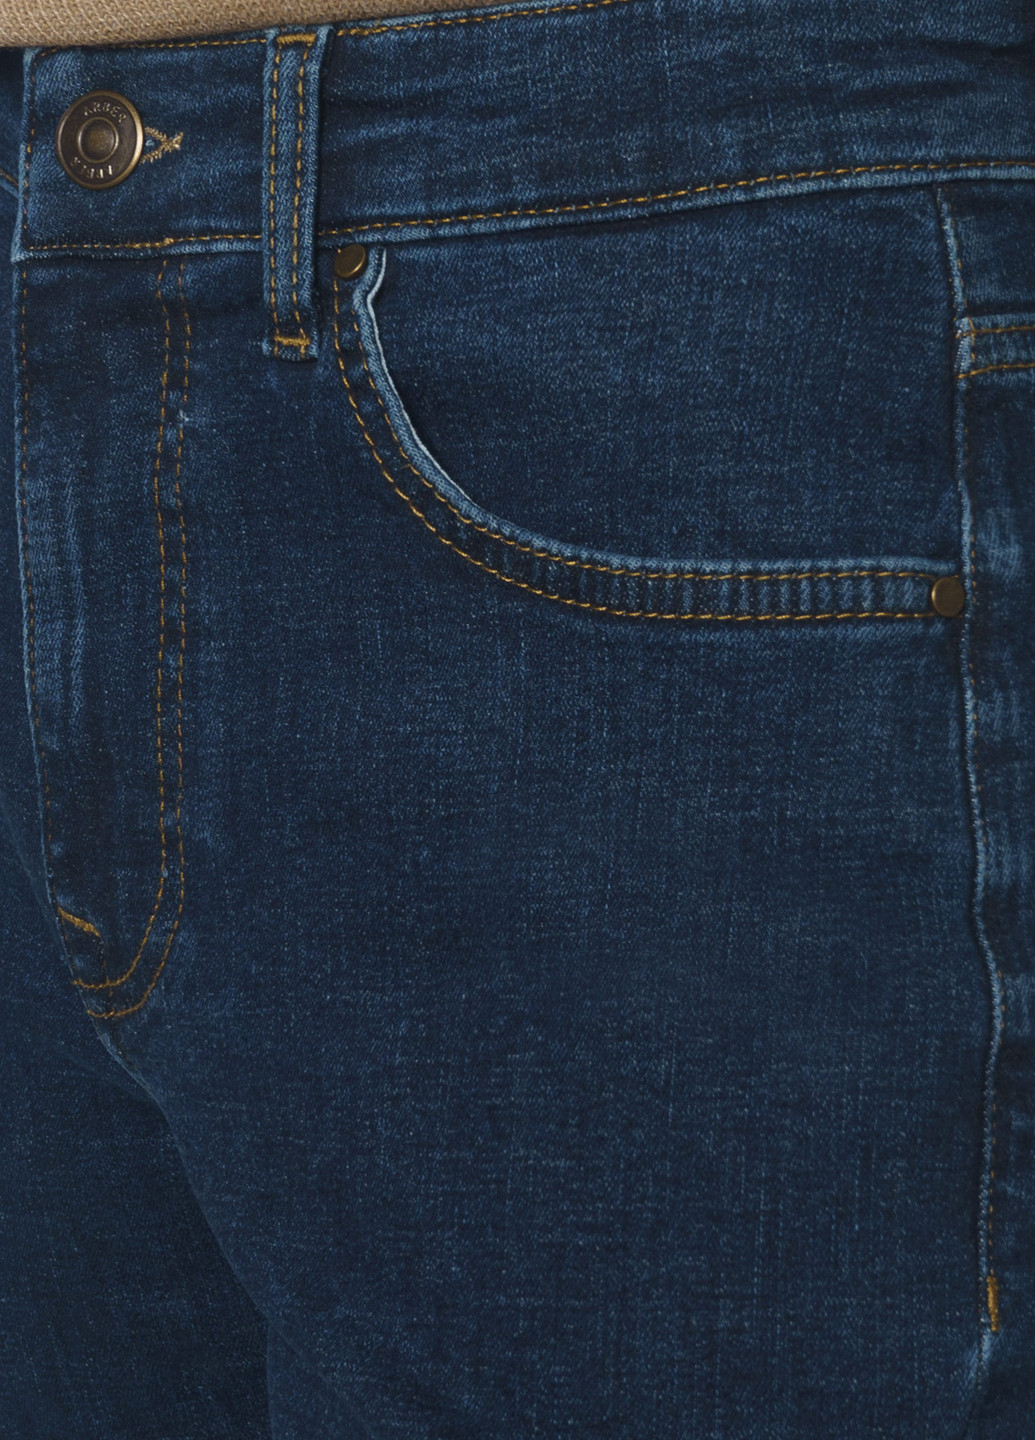 Синие зимние джинсы мужские SLIM FIT Arber